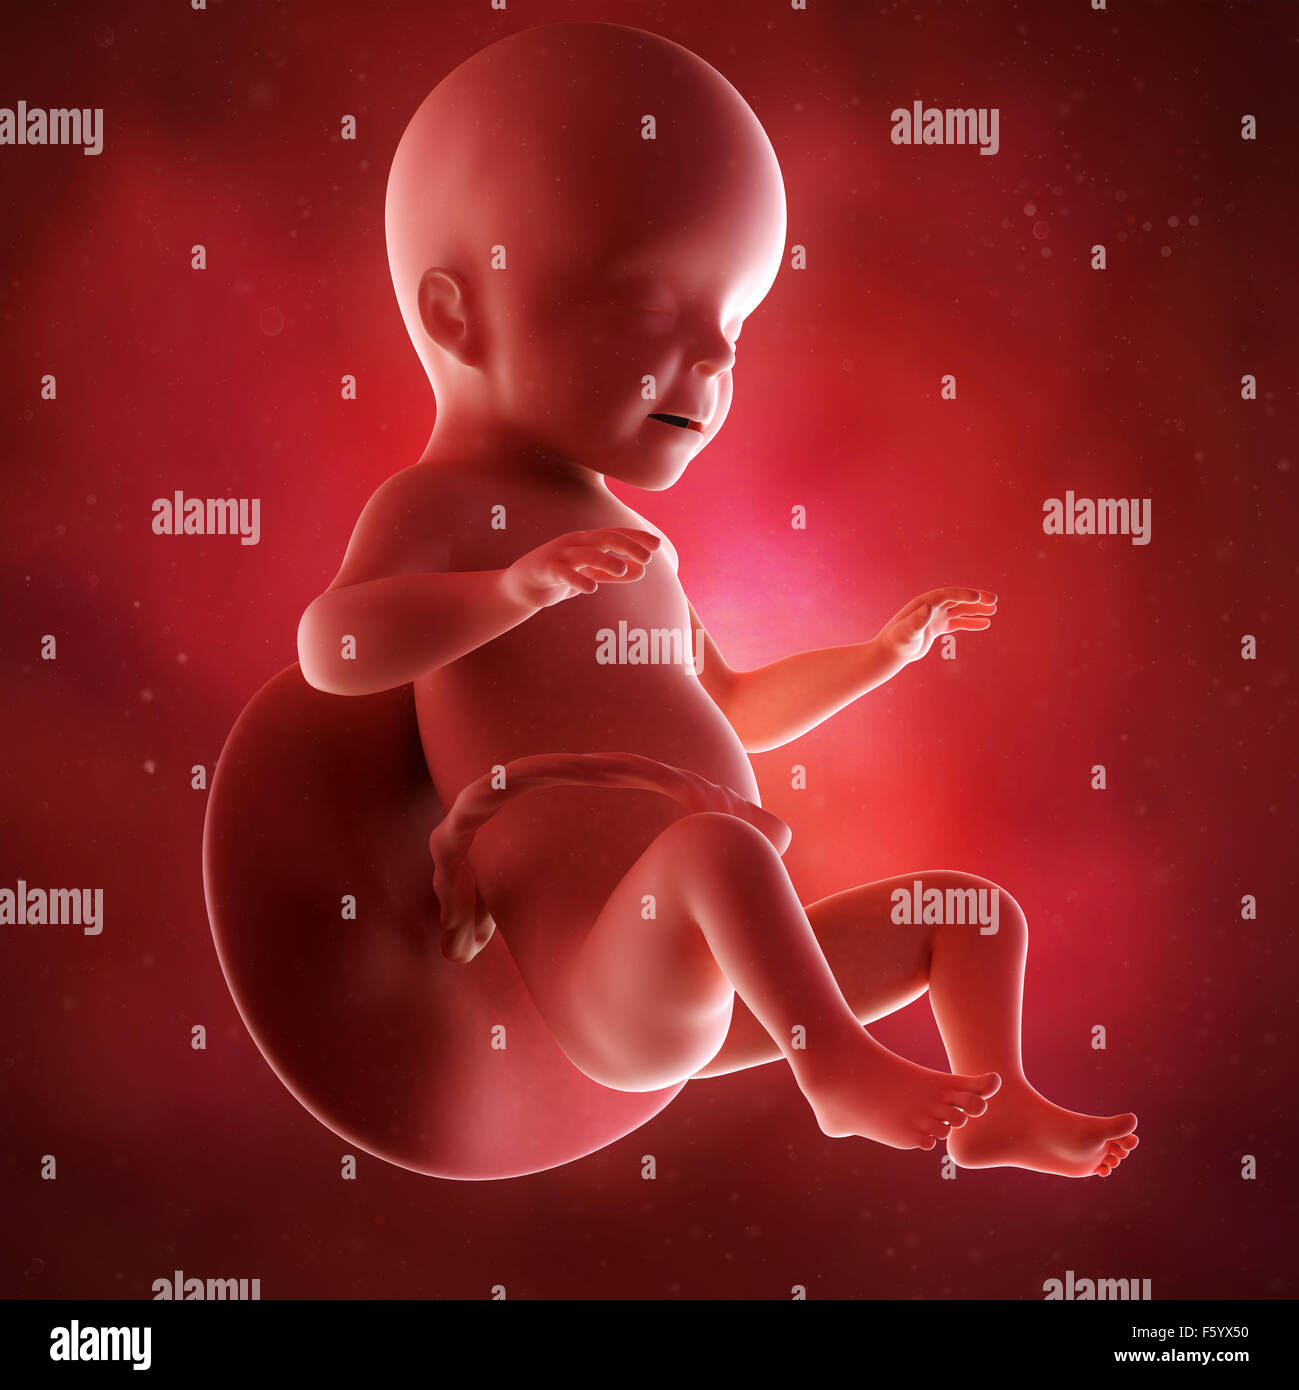 Précision médicale 3d illustration d'un foetus semaine 26 Banque D'Images